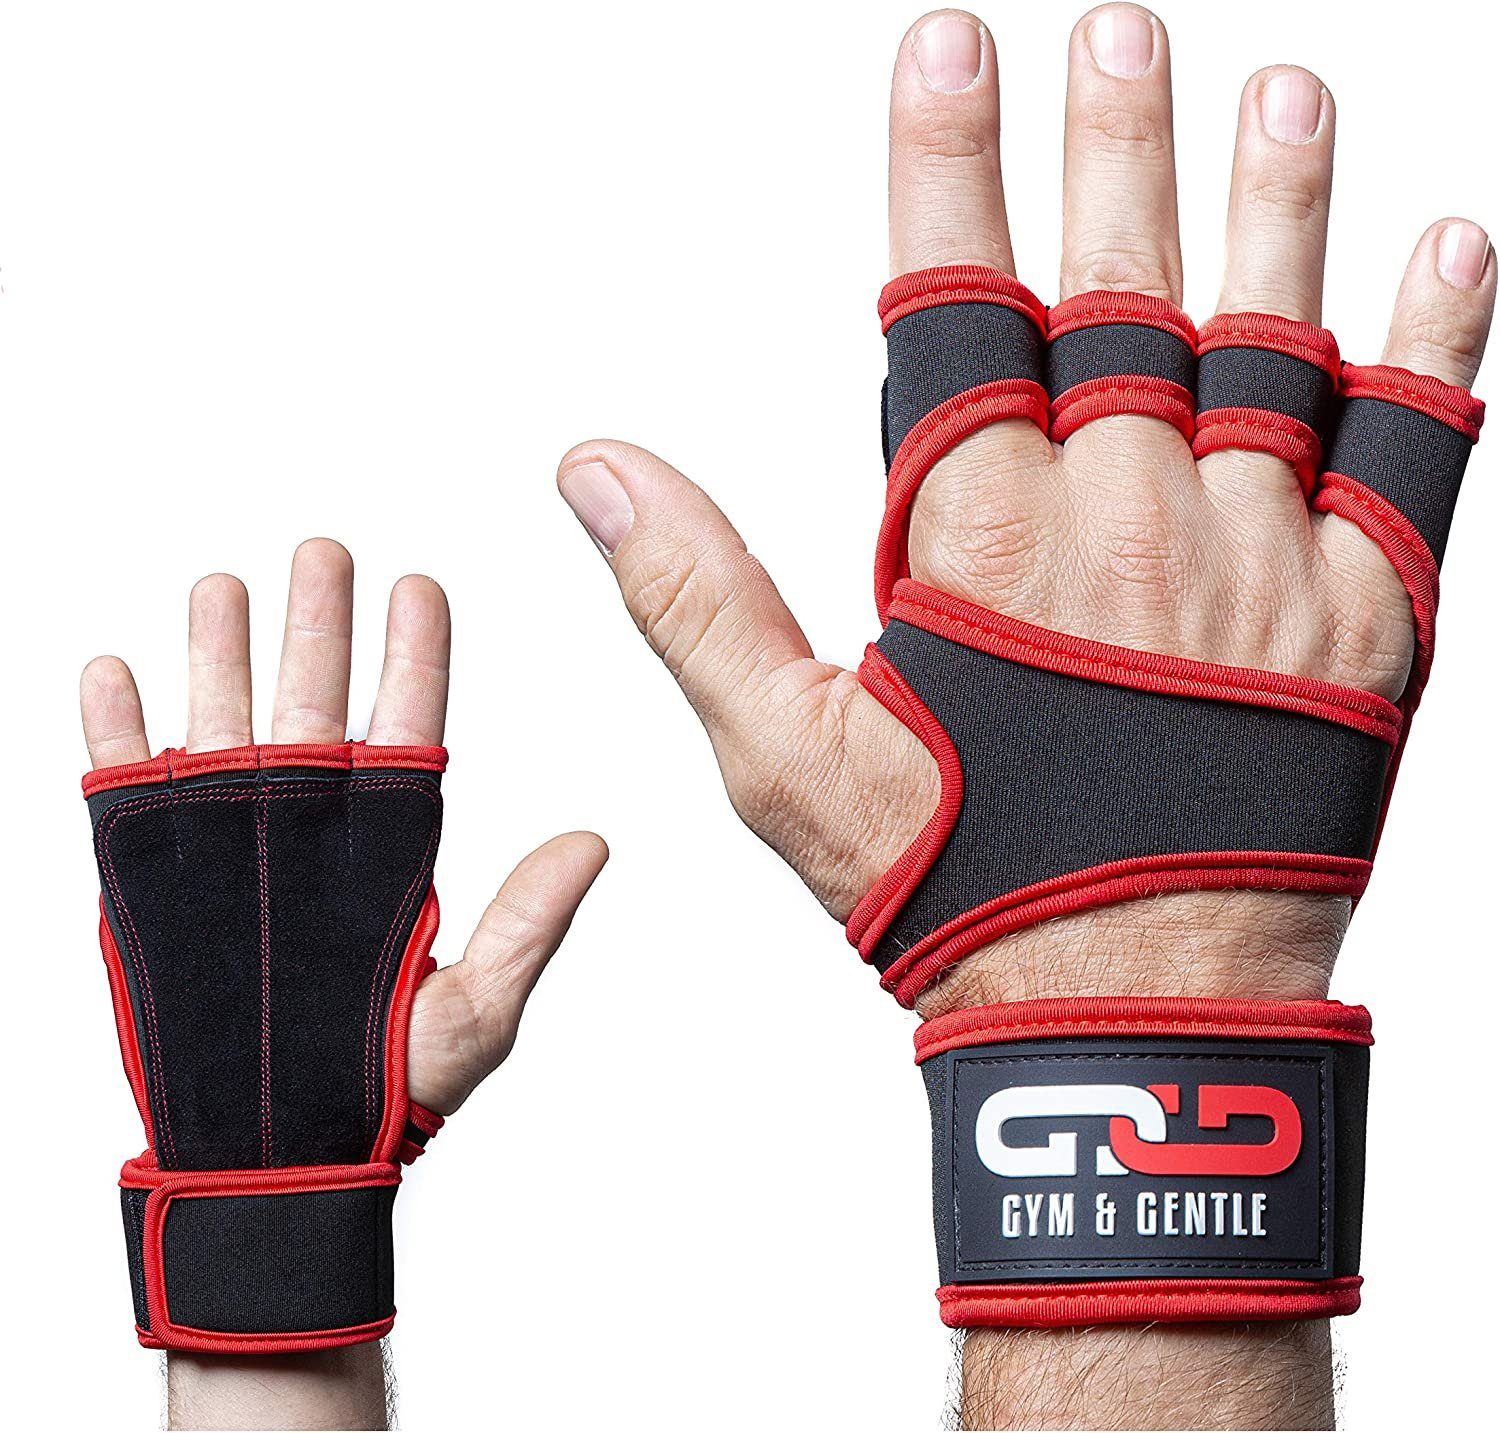 Gym & Gentle Multisporthandschuhe Fitnesshandschuhe mit Handgelenkstütze für Männer und Frauen geringes Gewicht rot | Trainingshandschuhe